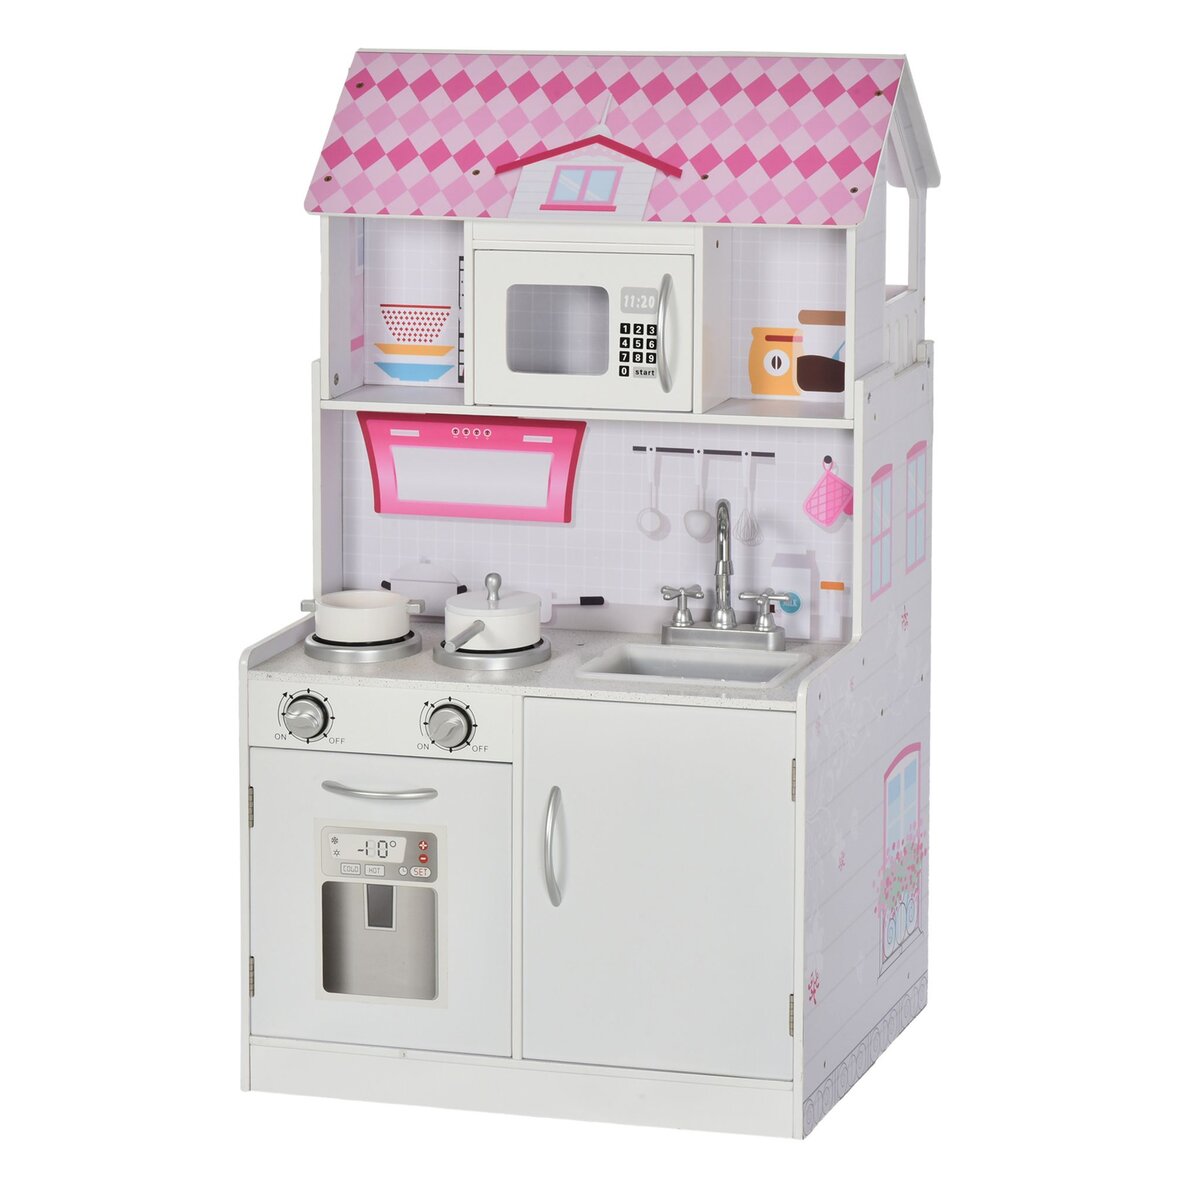 HOMCOM Cuisine bois jeu d'imitation - maison de poupée cuisine enfant 2 en 1  - nombreux accessoires & rangements inclus - MDF pin rose blanc pas cher 